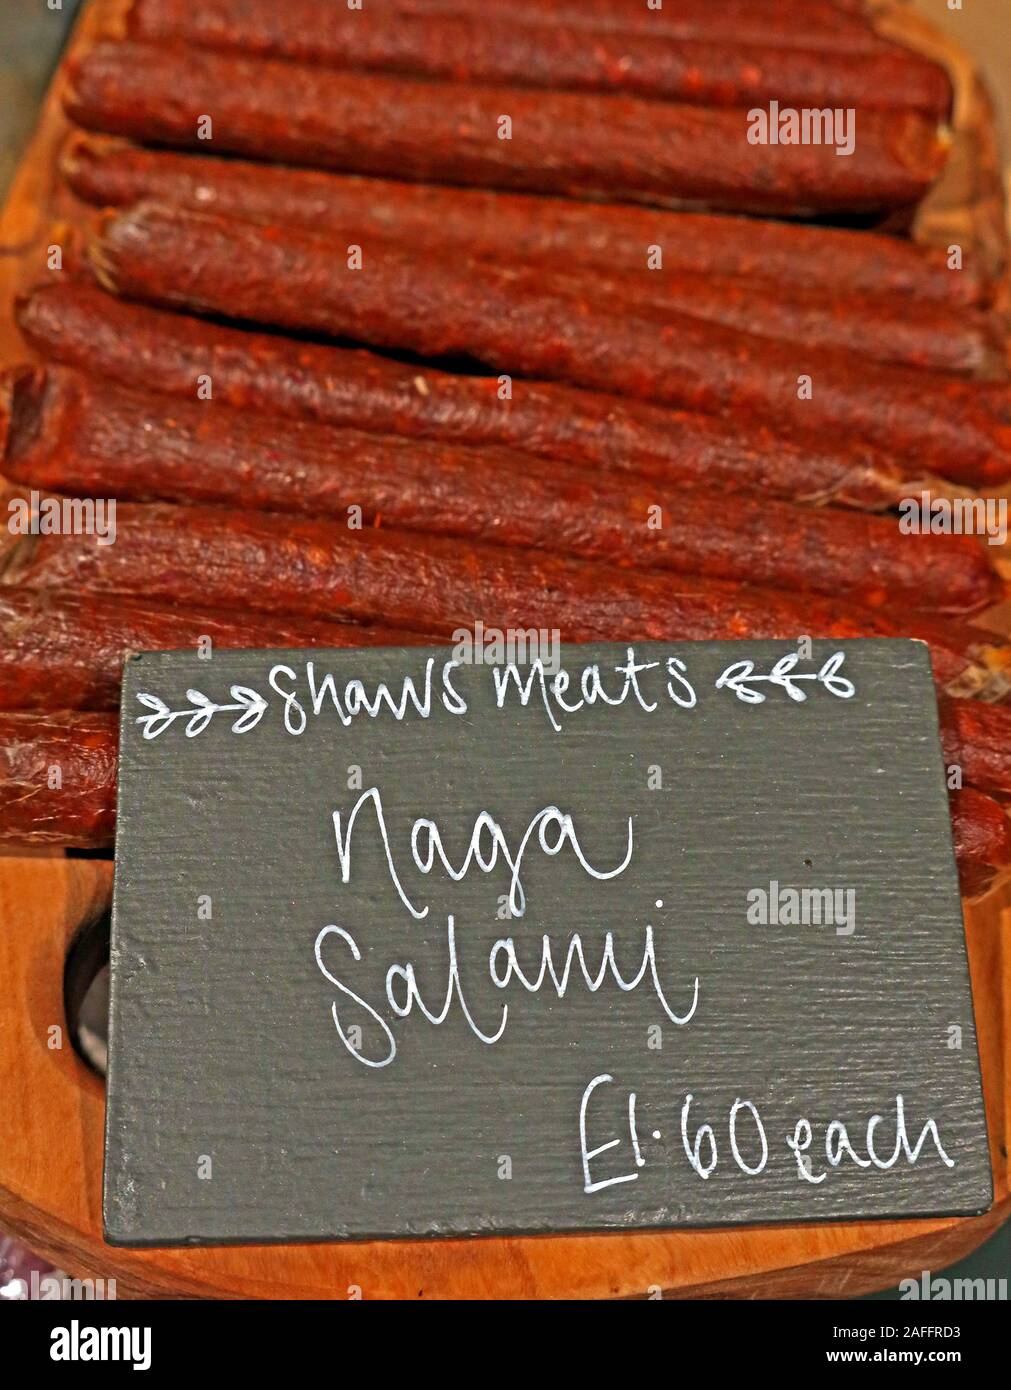 Salami artisanal, Shaws Meats, en vente sur le marché agricole biologique, Gloucestershire, Angleterre du Sud-Ouest, Royaume-Uni, produits à base de viande, de Cumbria Banque D'Images